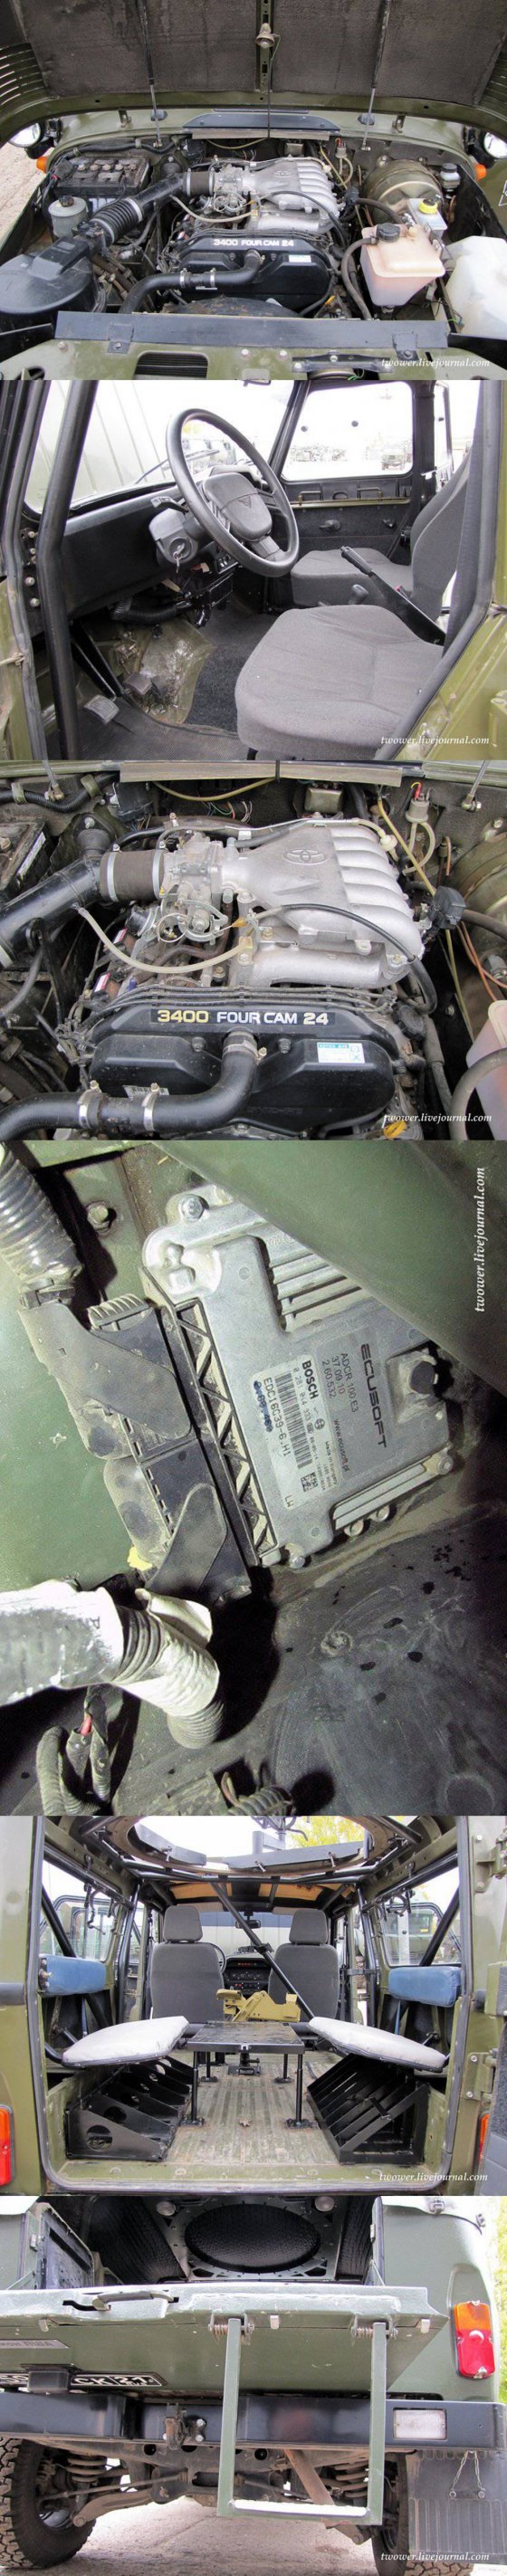 რუსებმა  "УАЗ"-ი  აღჭურვეს "ტოიოტას"  მძლავრი, 6 ცილინდრიანი ძრავით, რესორი კი ზამბარებით შეცვალეს